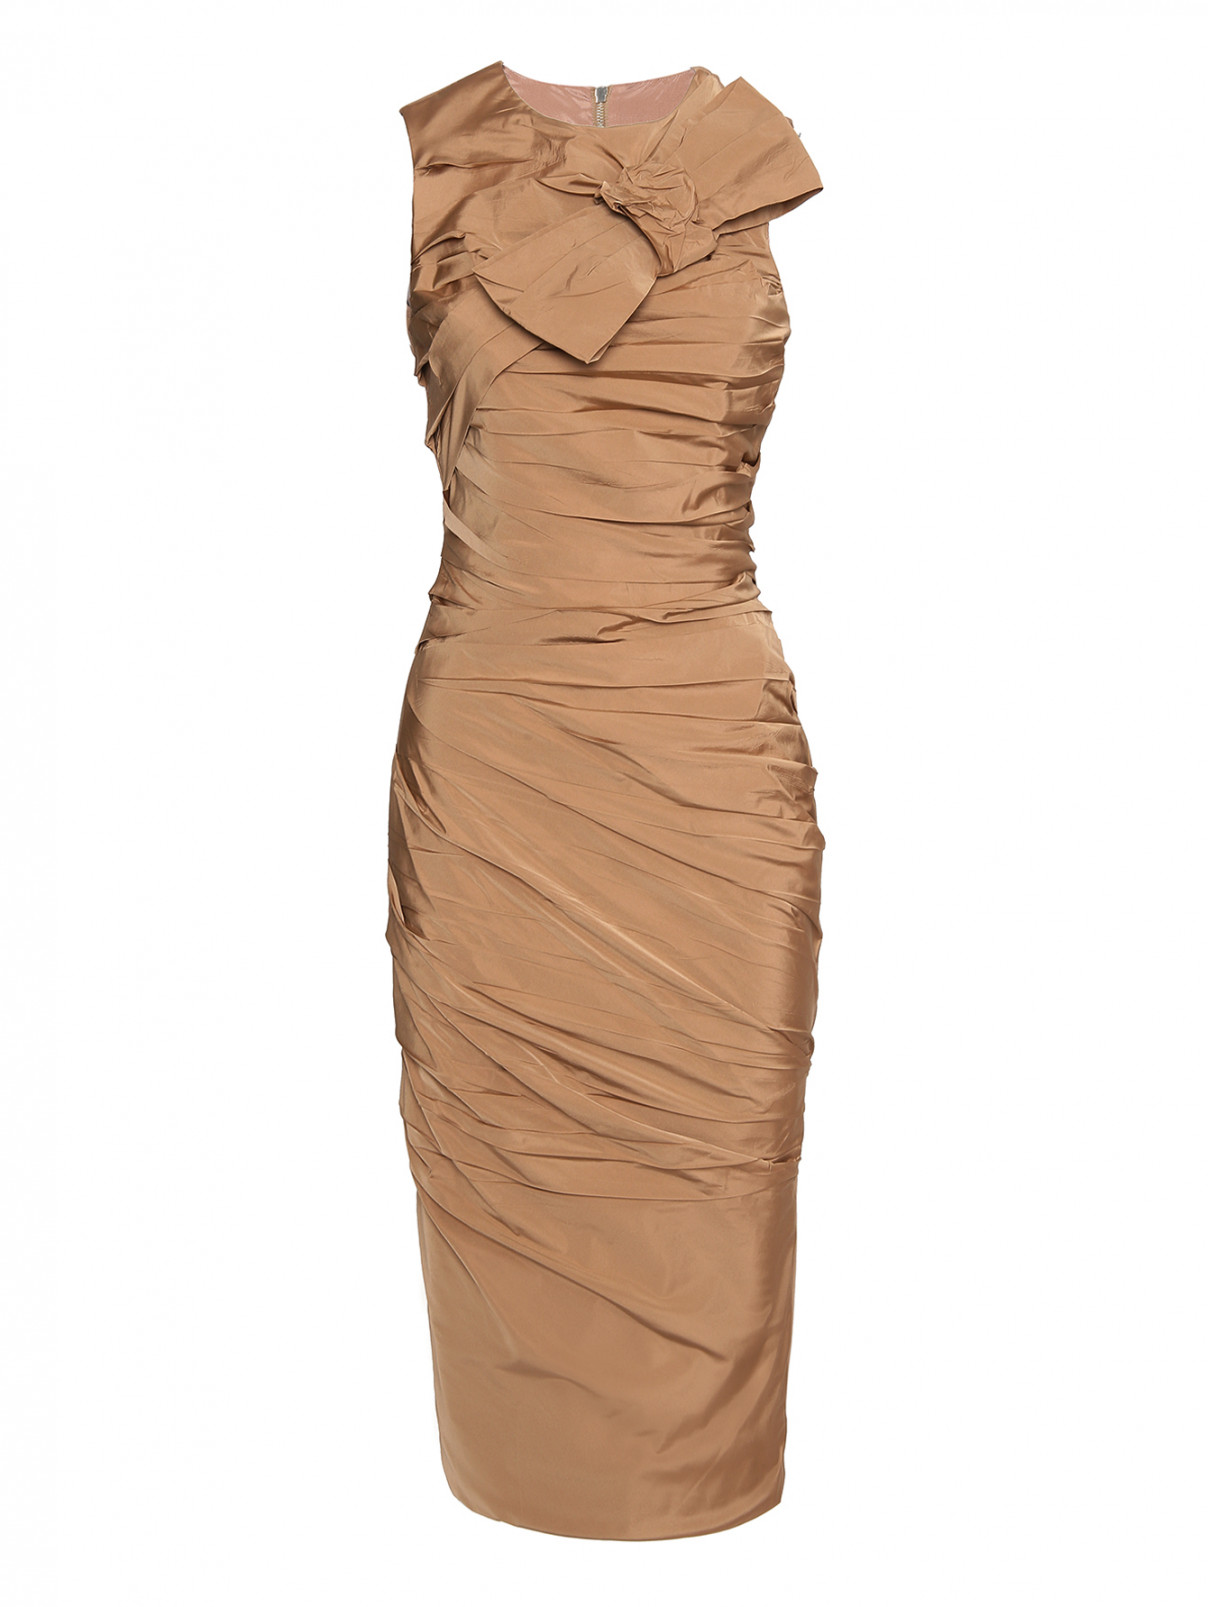 Платье комбинированное с декоративными элементами Max Mara  –  Общий вид  – Цвет:  Бежевый